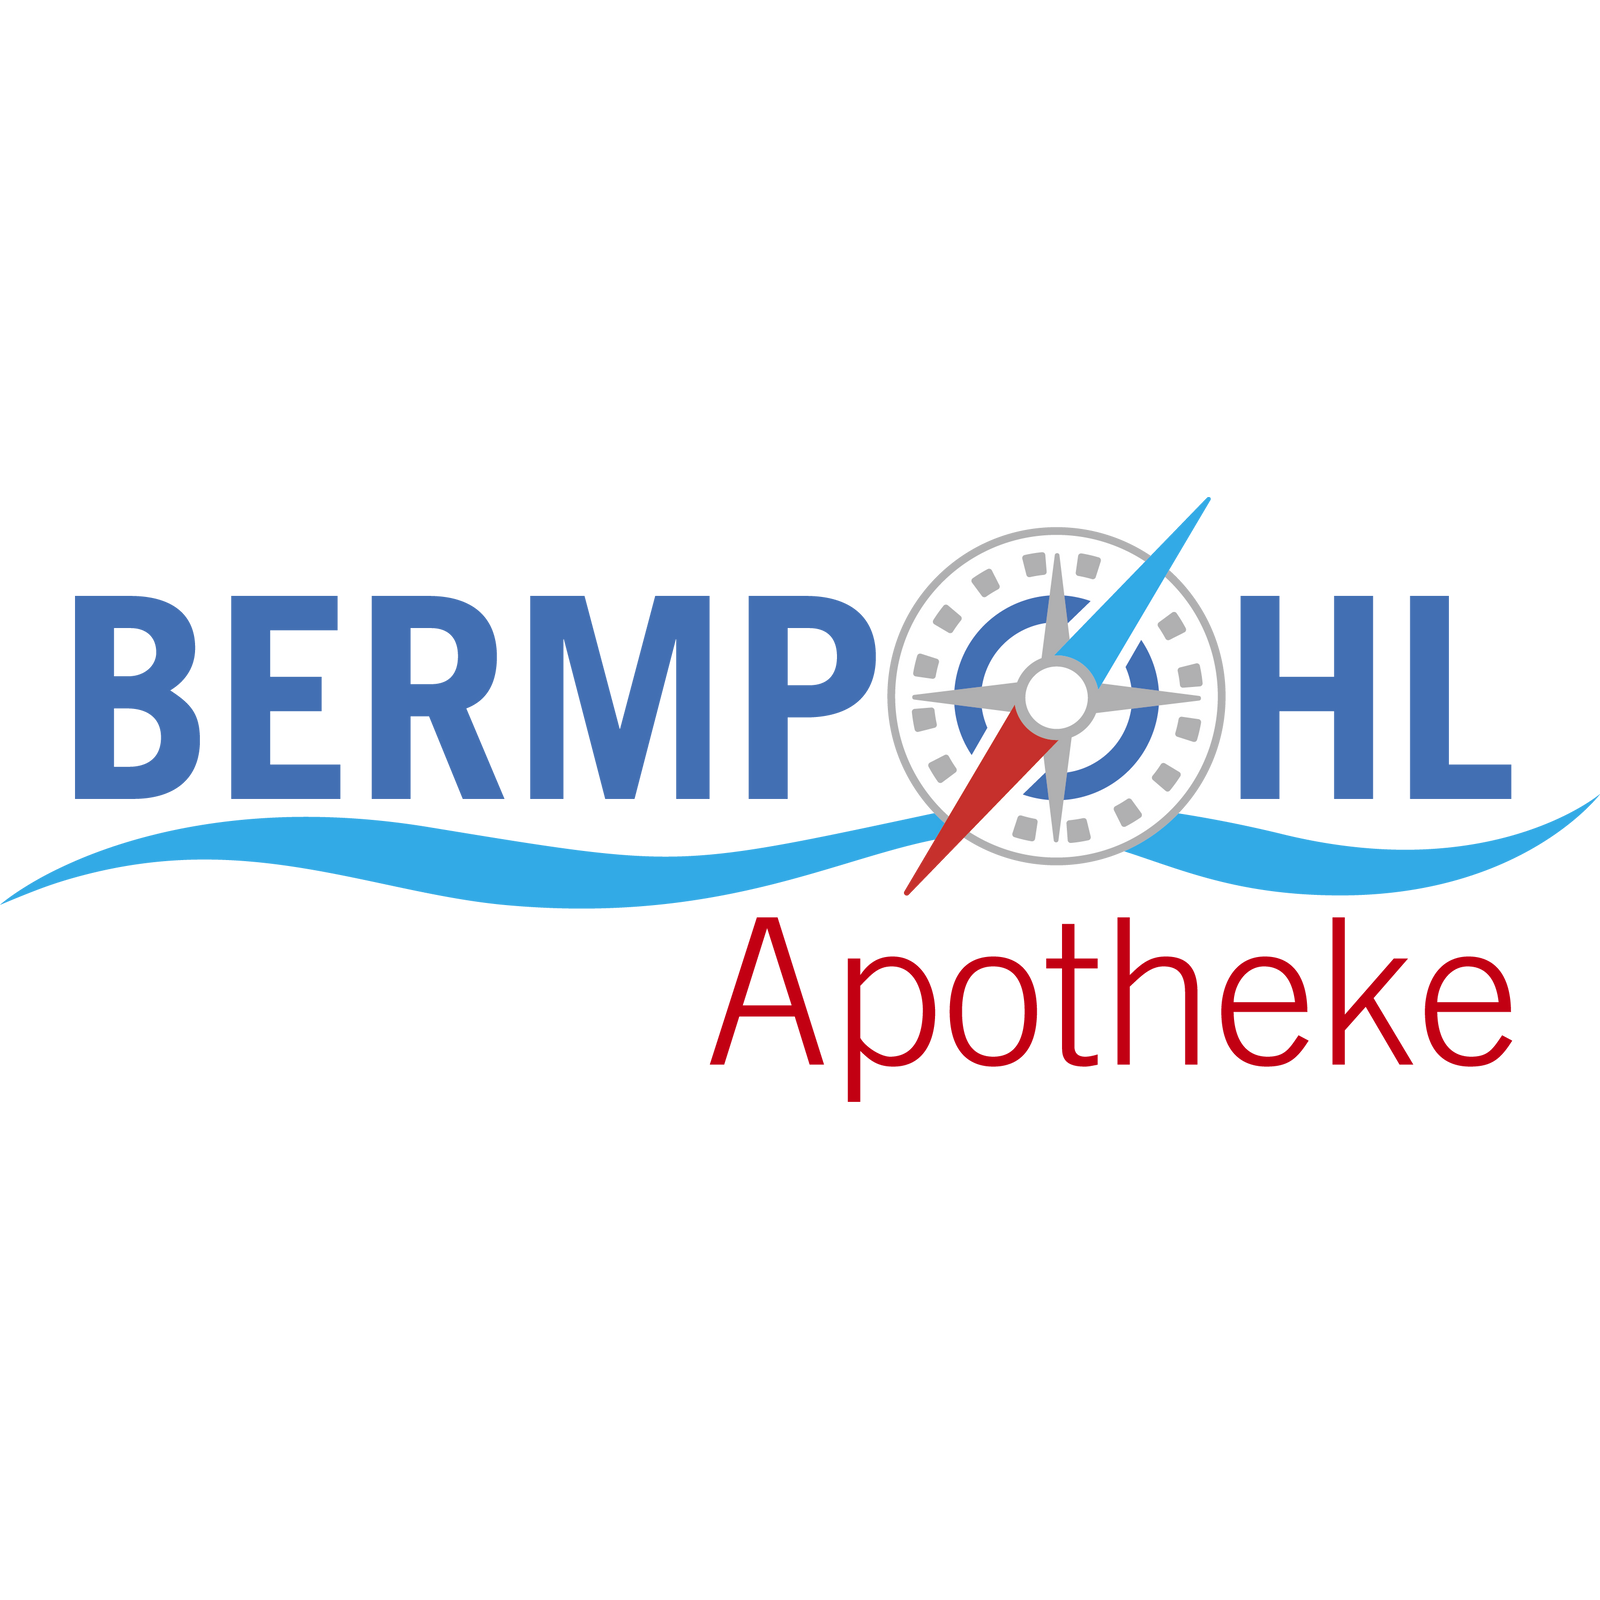 Bermpohl-Apotheke  